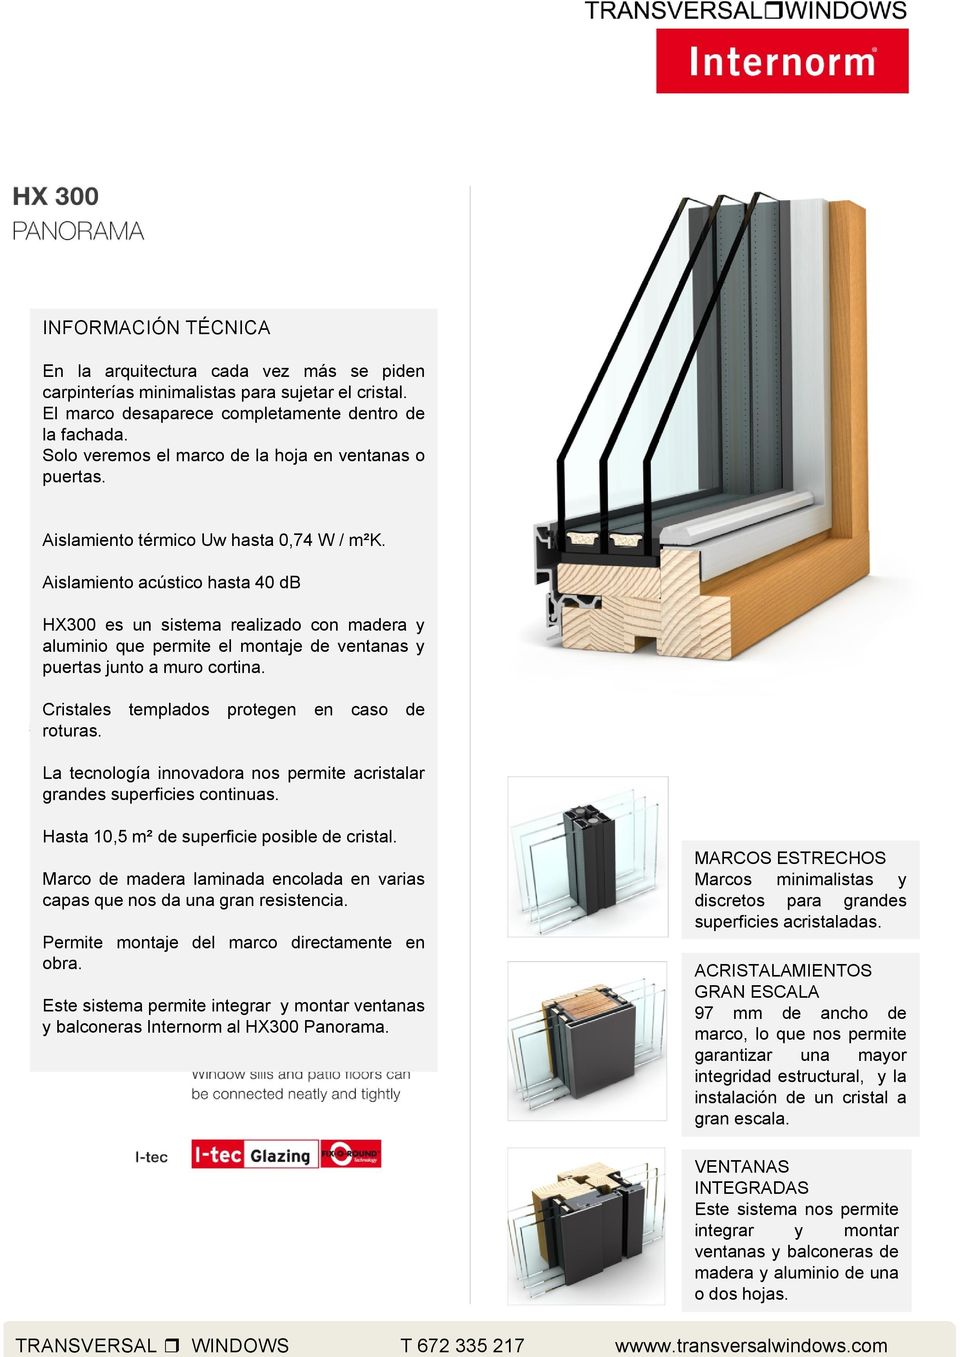 Aislamiento acústico hasta 40 db HX300 es un sistema realizado con madera y aluminio que permite el montaje de ventanas y puertas junto a muro cortina. Cristales templados protegen en caso de roturas.